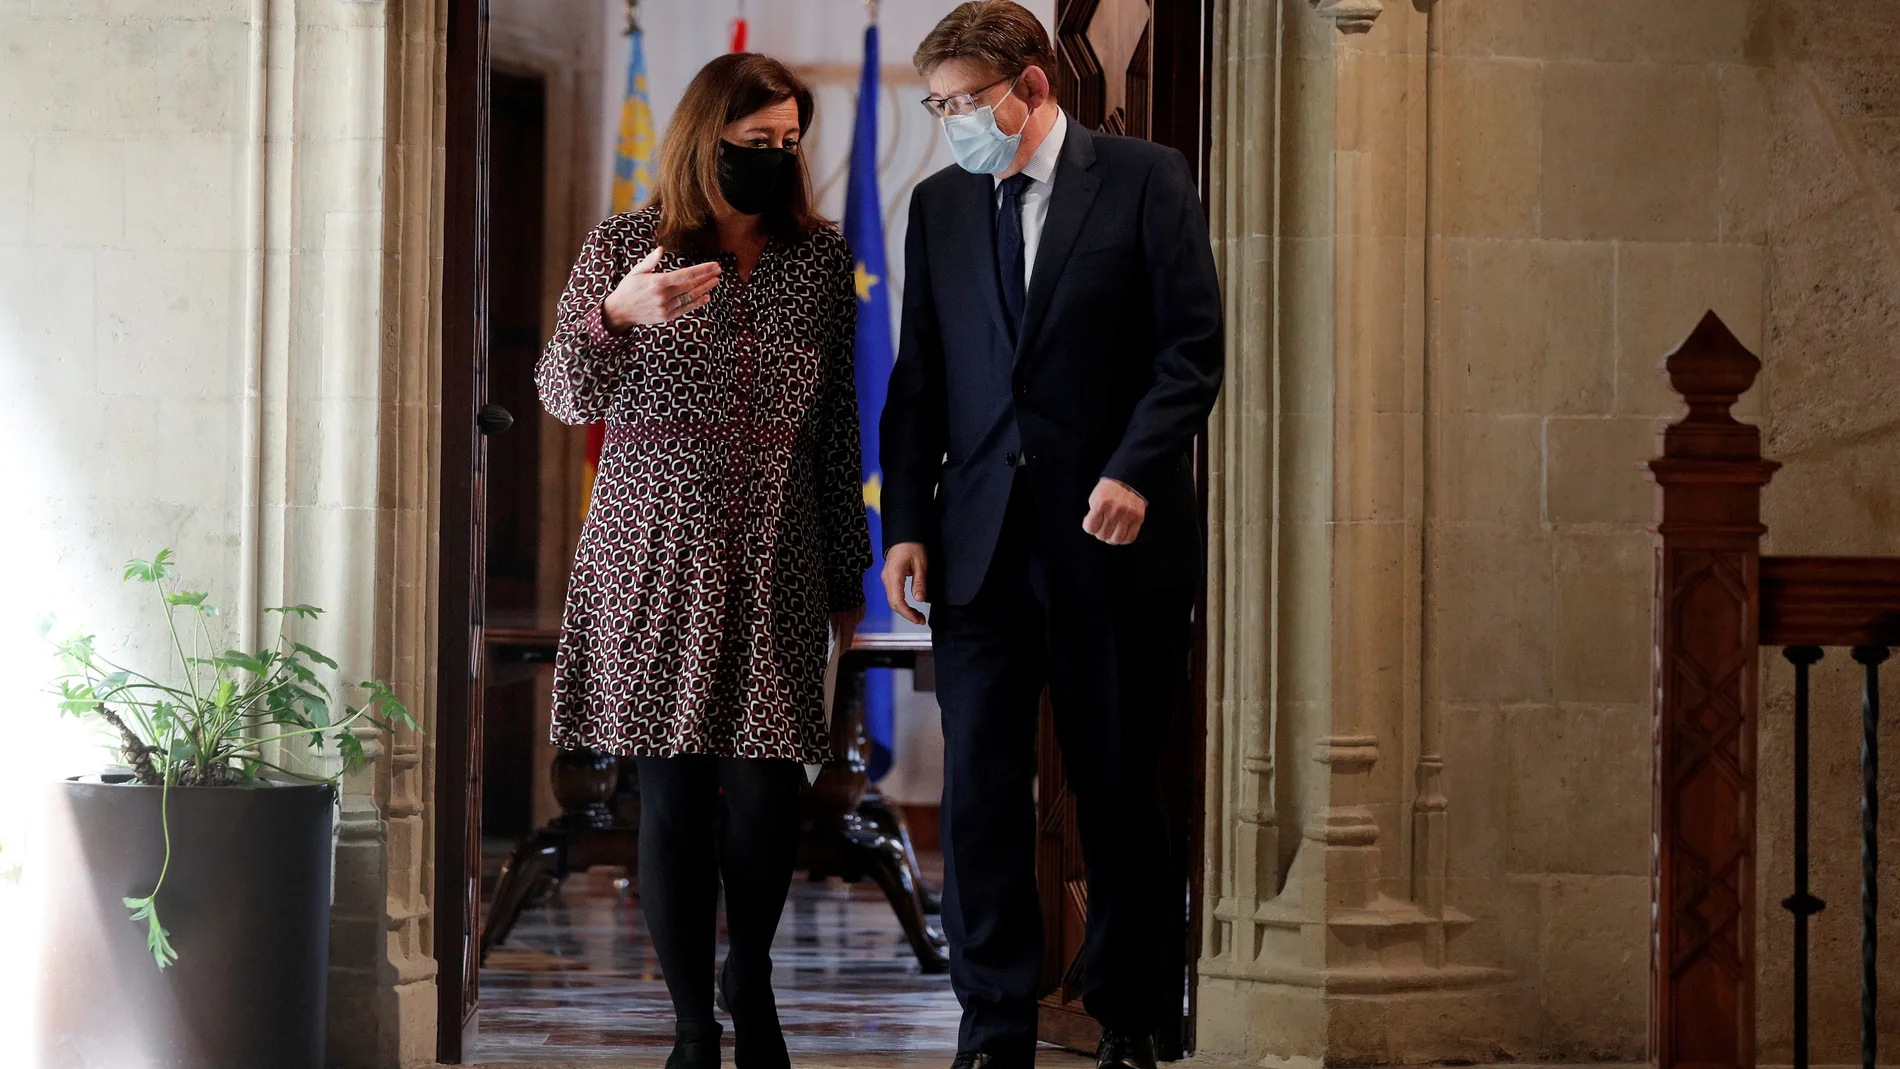 El presidente de la Generalitat, Ximo Puig , y la presidenta de Baleares, Francina Armengol, se dirigen a la rueda de prensa tras reunirse para tratar asuntos relacionados con las ayudas de los fondos europeos